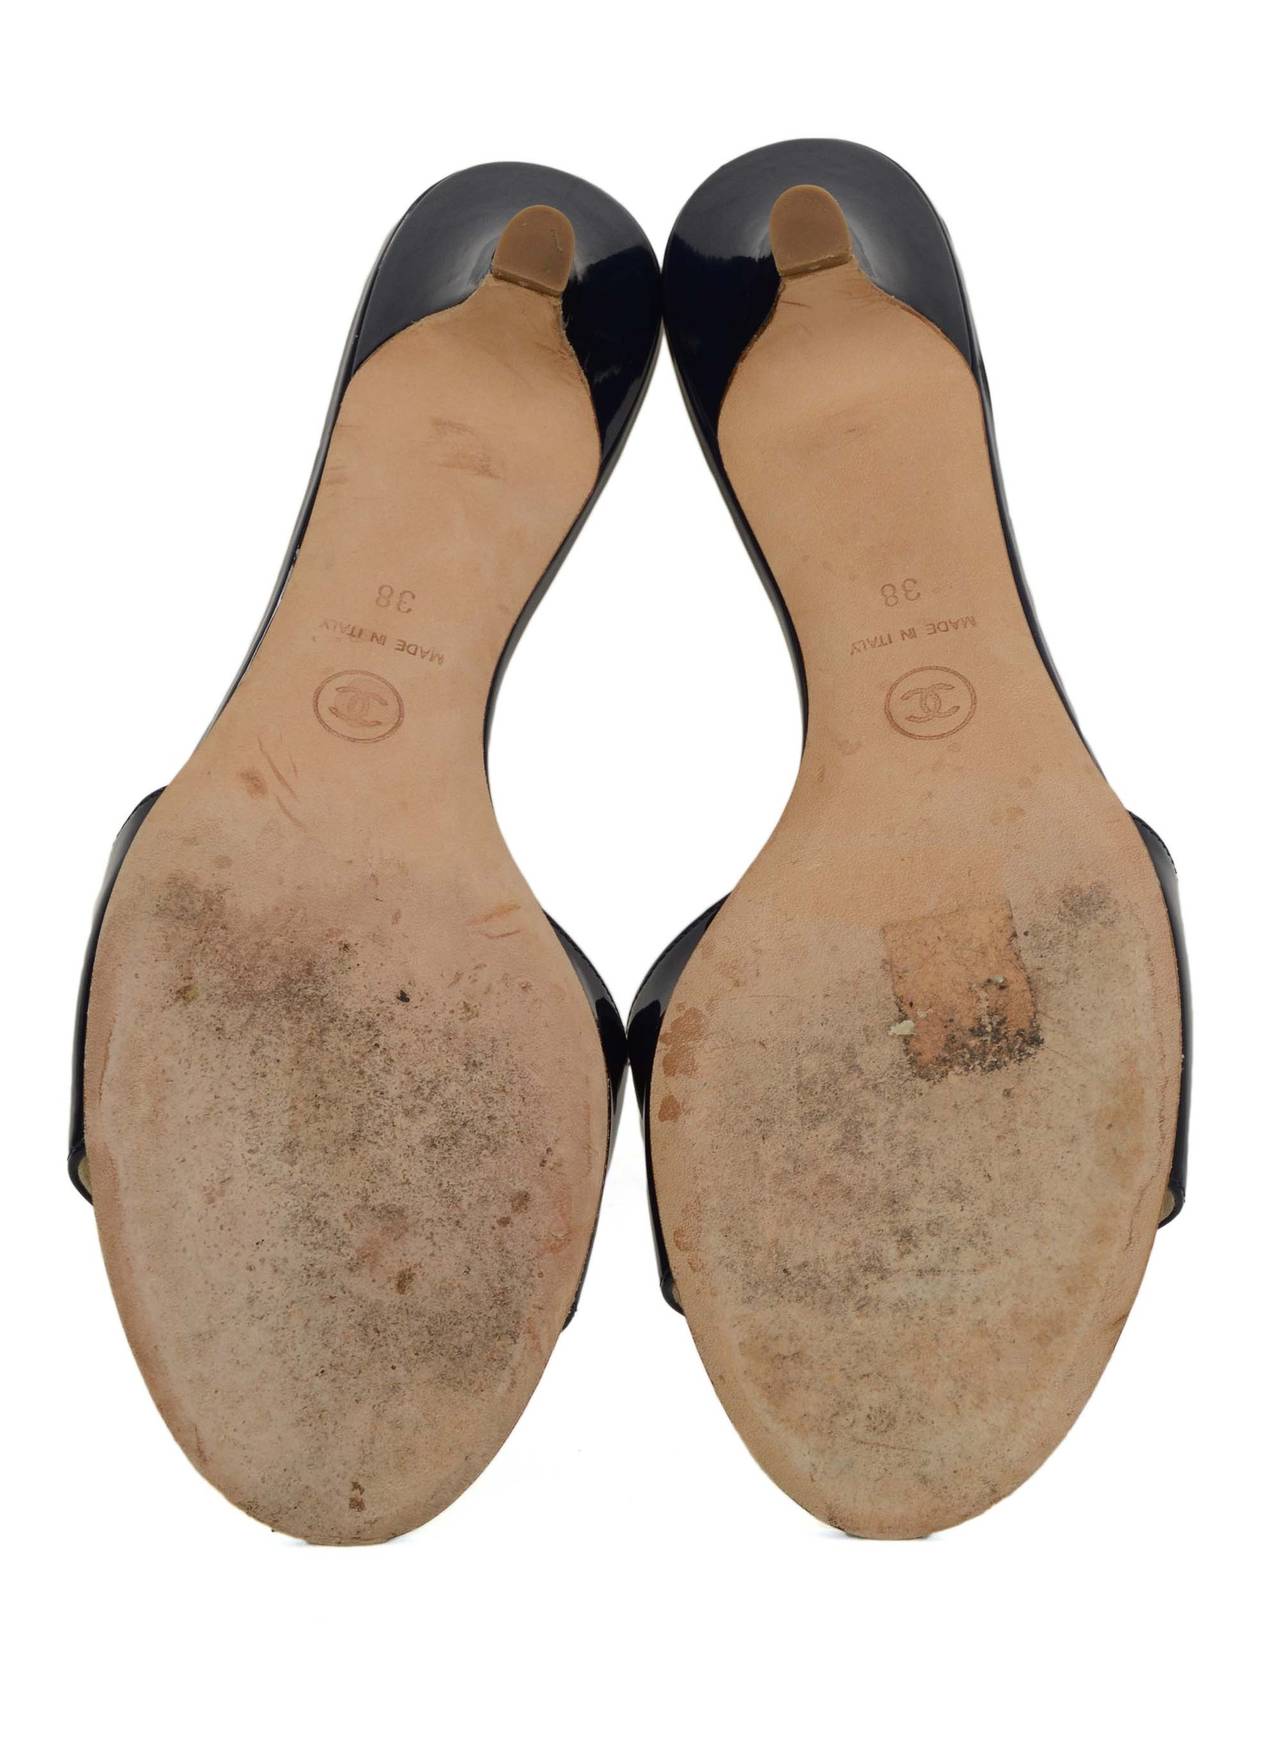 CHANEL Navy Patent Mule Sandals sz 38 2